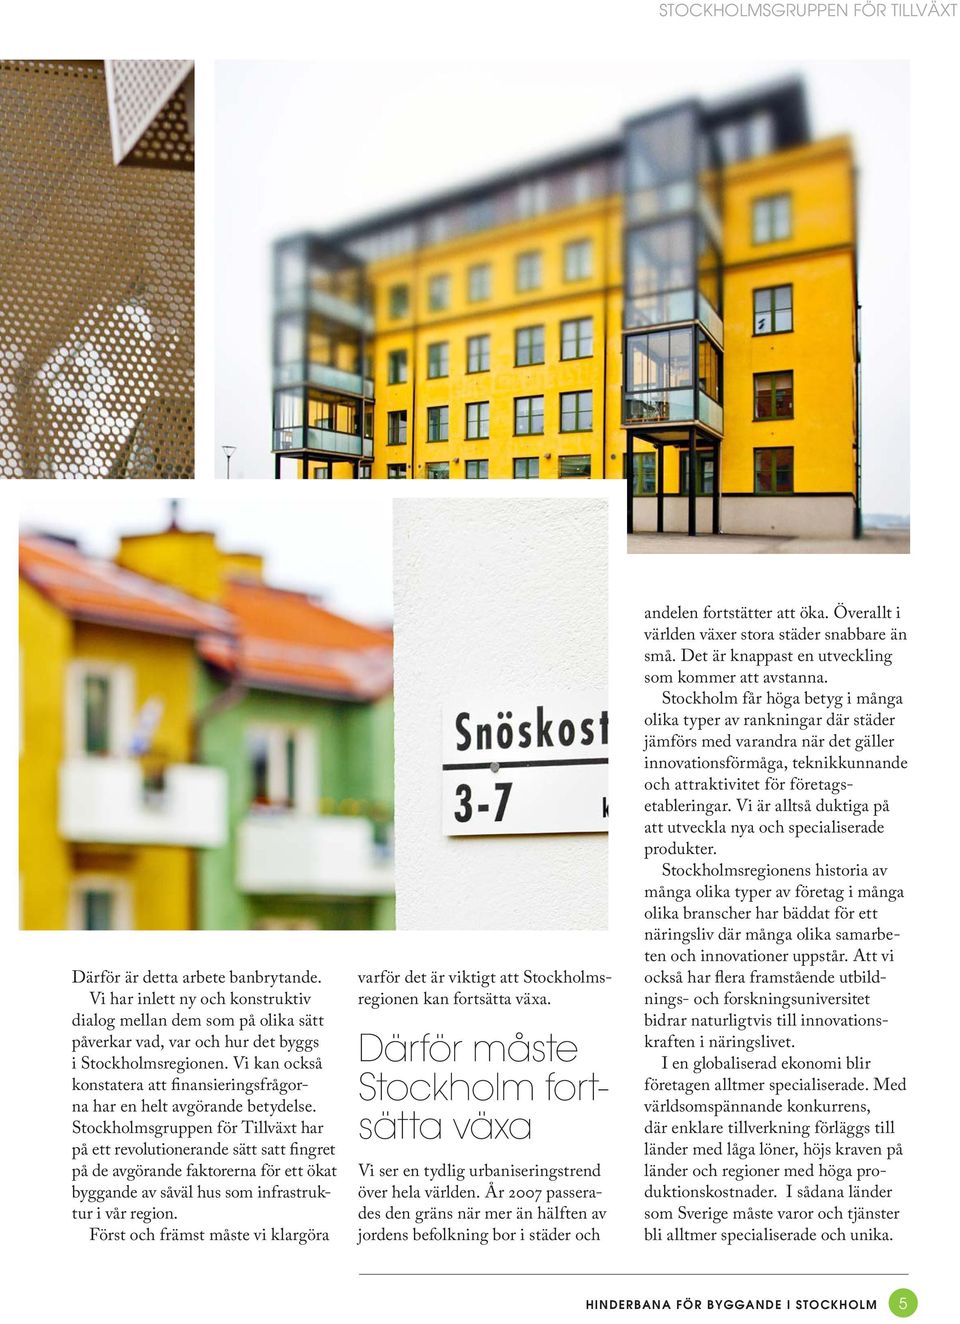 Stockholmsgruppen för Tillväxt har på ett revolutionerande sätt satt fingret på de avgörande faktorerna för ett ökat byggande av såväl hus som infrastruktur i vår region.